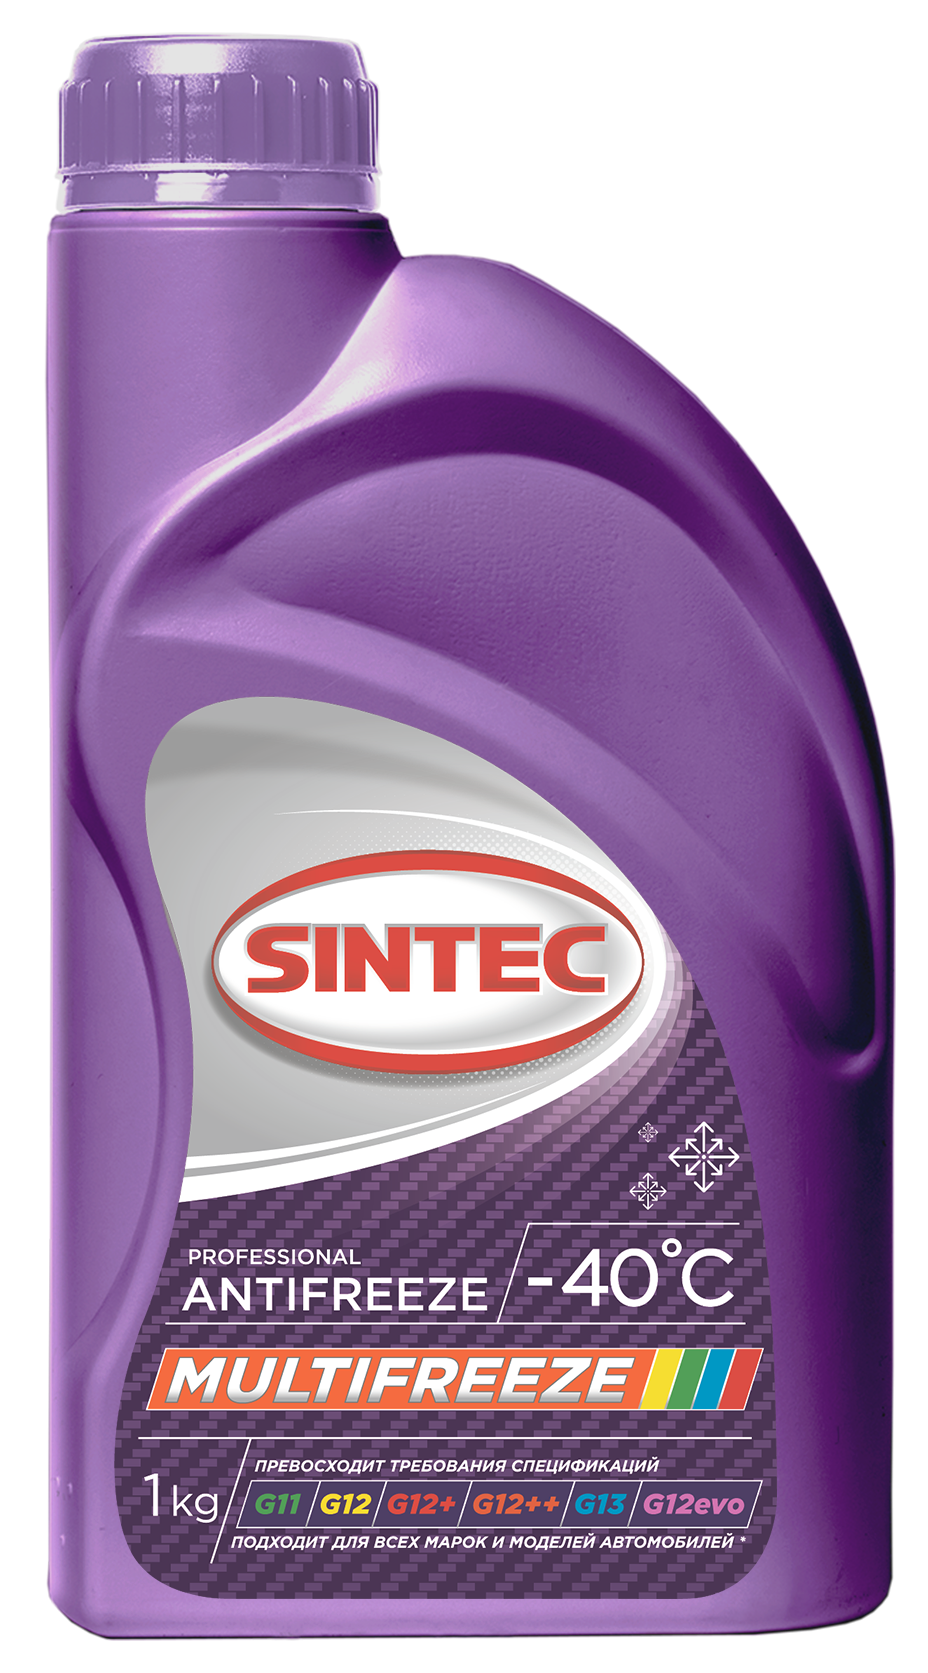 фото Антифриз sintec multifreeze (-40) мультифриз фиолетовый 1 кг